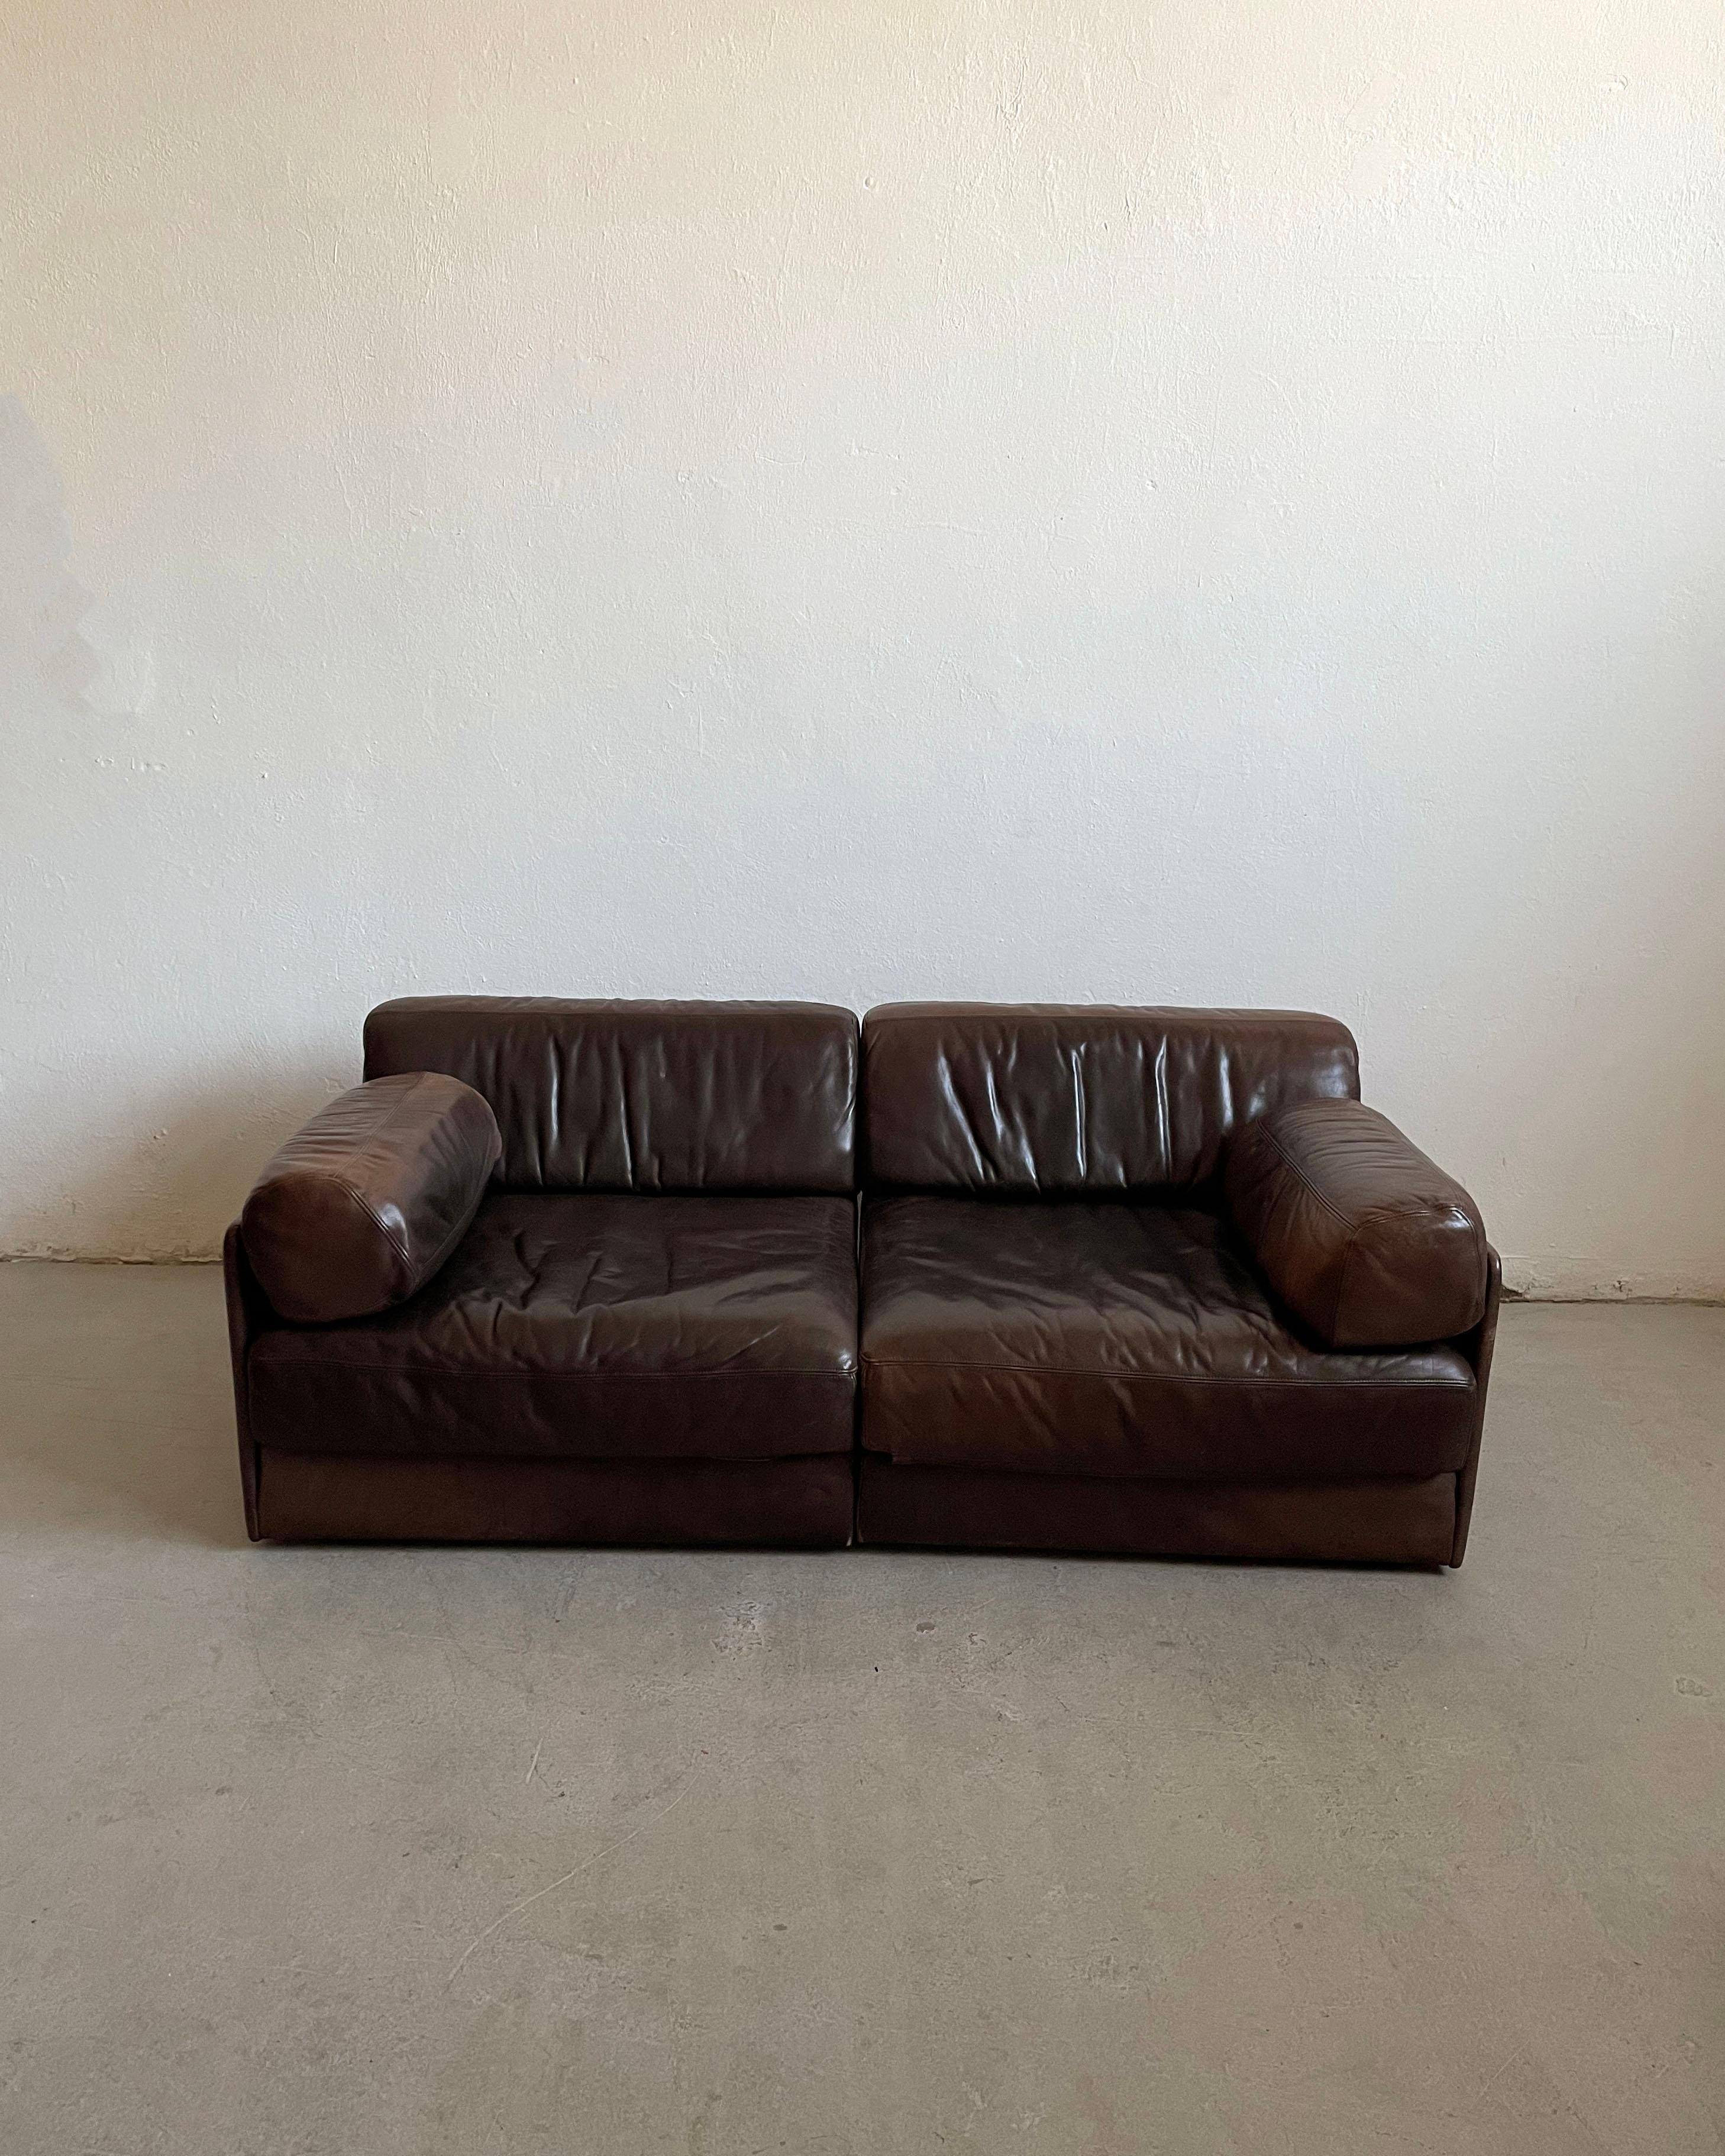 Vintage De Sede 2-piece modular sofa bed, model 'DS-76', leather, fabric, foam, wooden frame, Switzerland 1970s.

Important : L'objet proposé à la vente est en bon état d'origine. Le cuir présente une belle patine liée à l'âge. L'un des coussins de